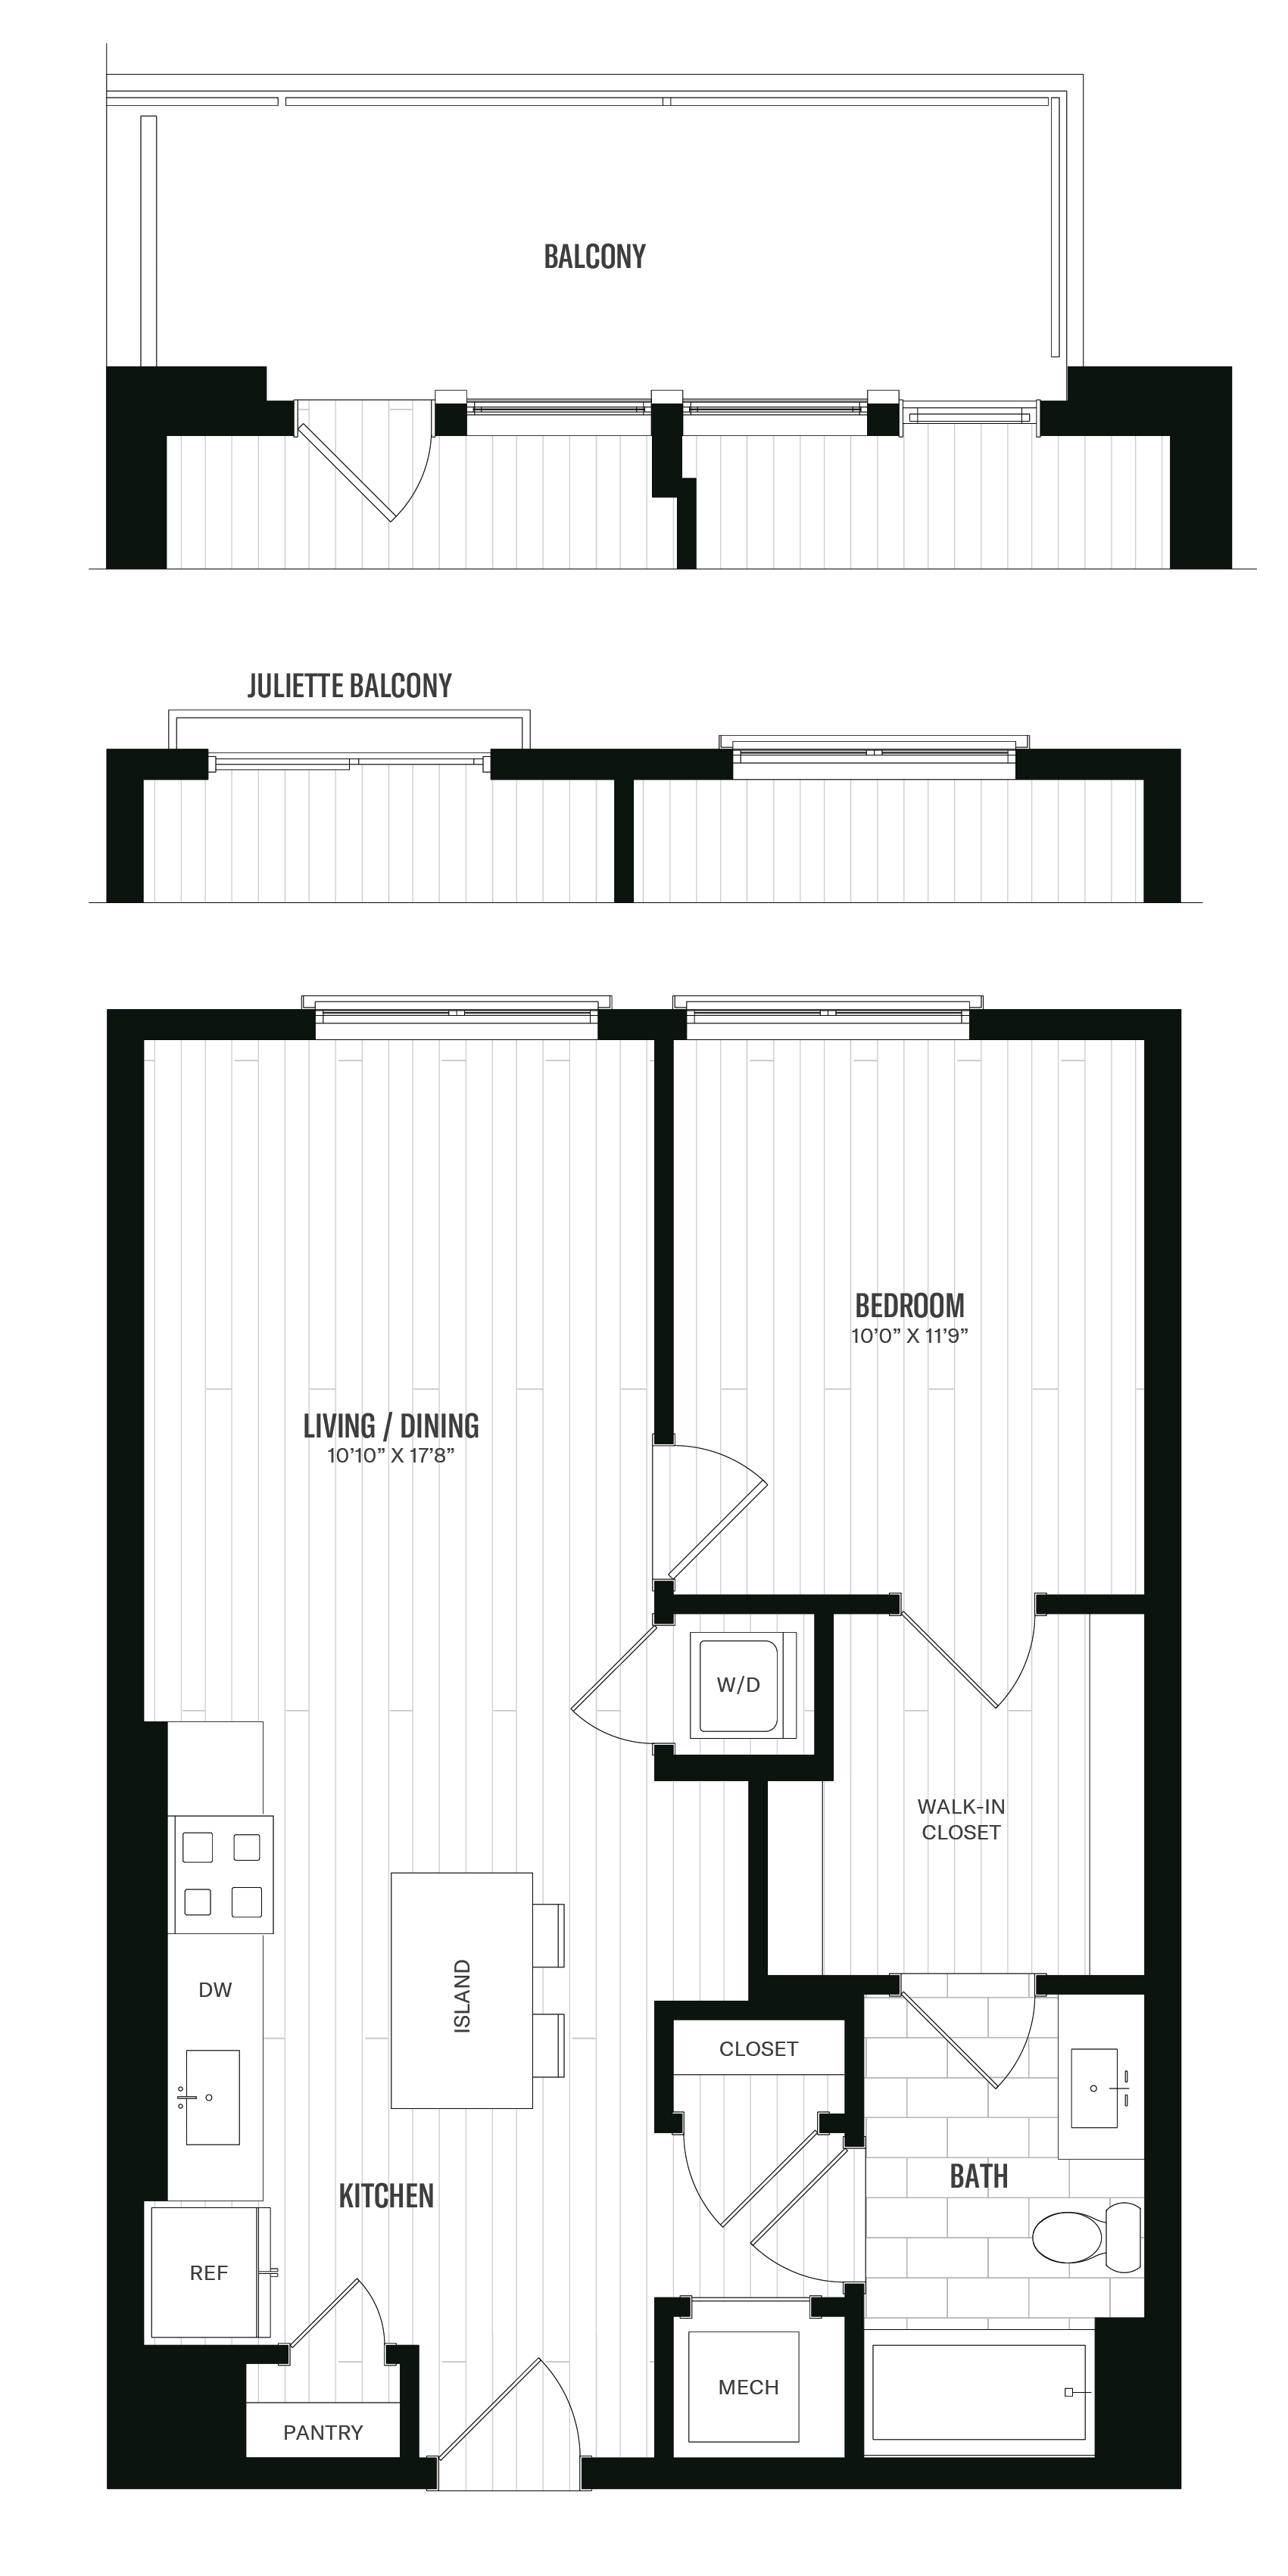 Floorplan image of unit 541